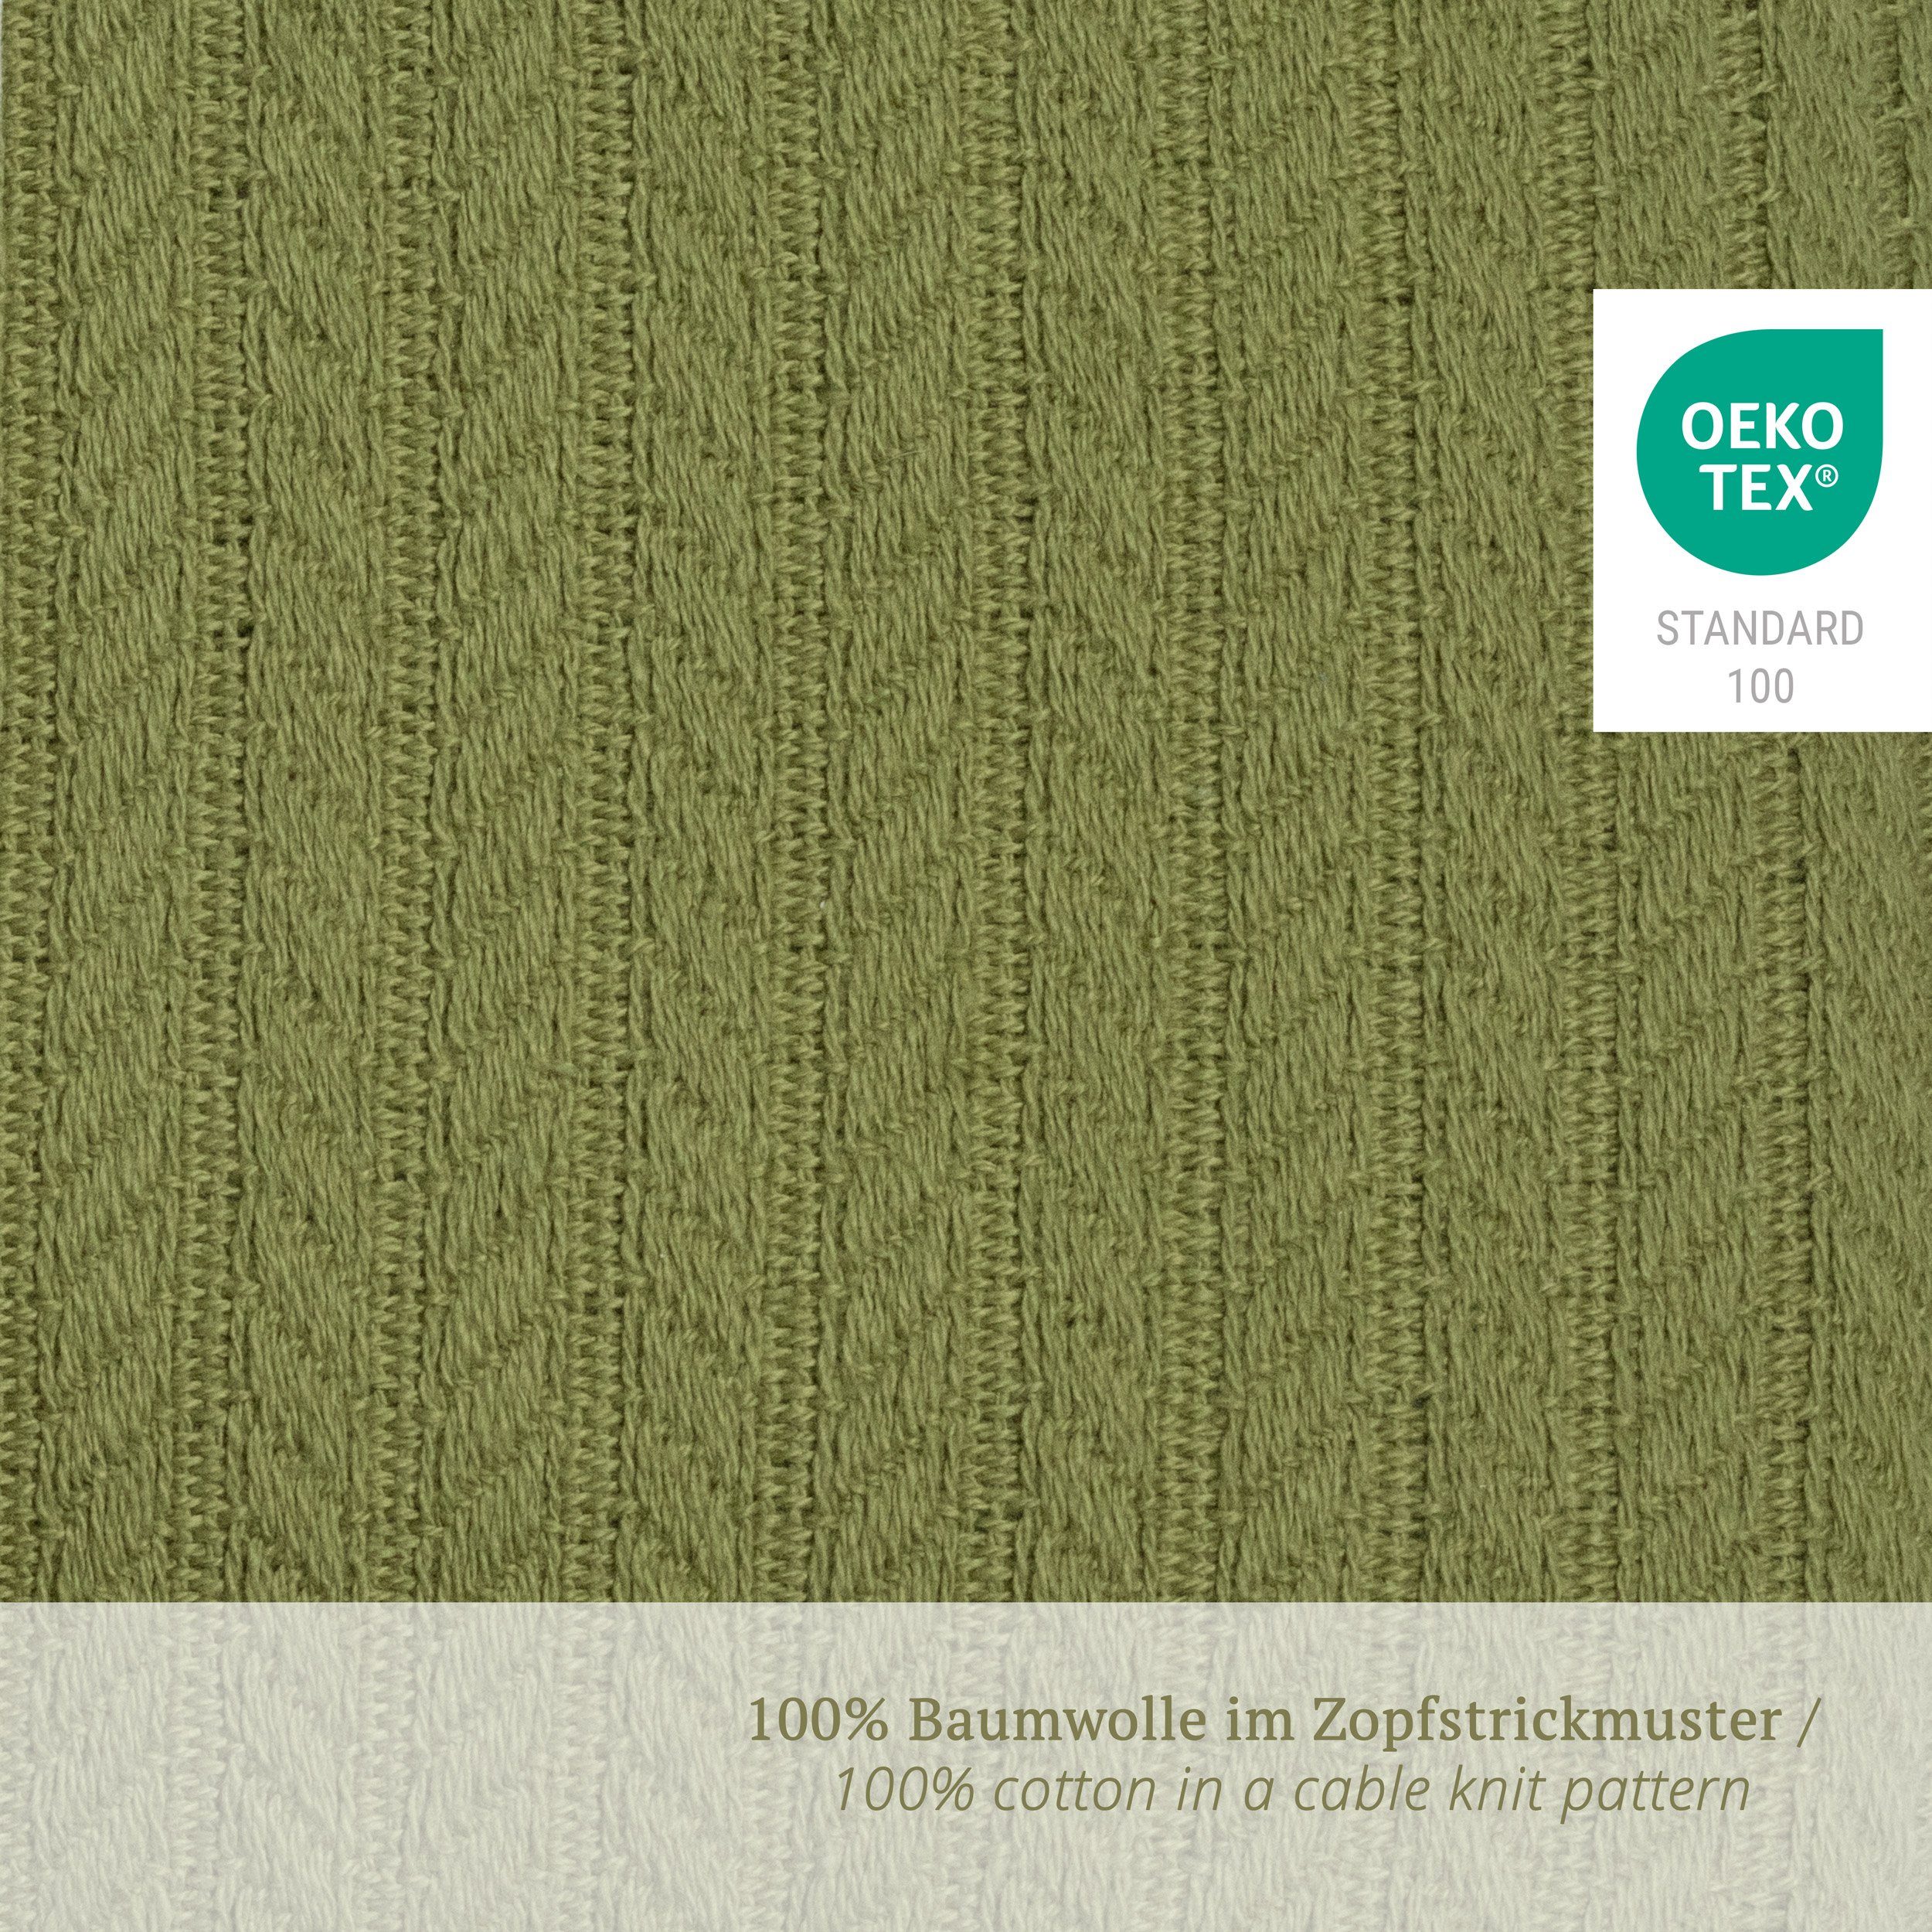 Wickelauflage) Wickelauflage (1x Puckdaddy Leah mit GmbH Olive Zopfstrick-Muster 77x75cm in